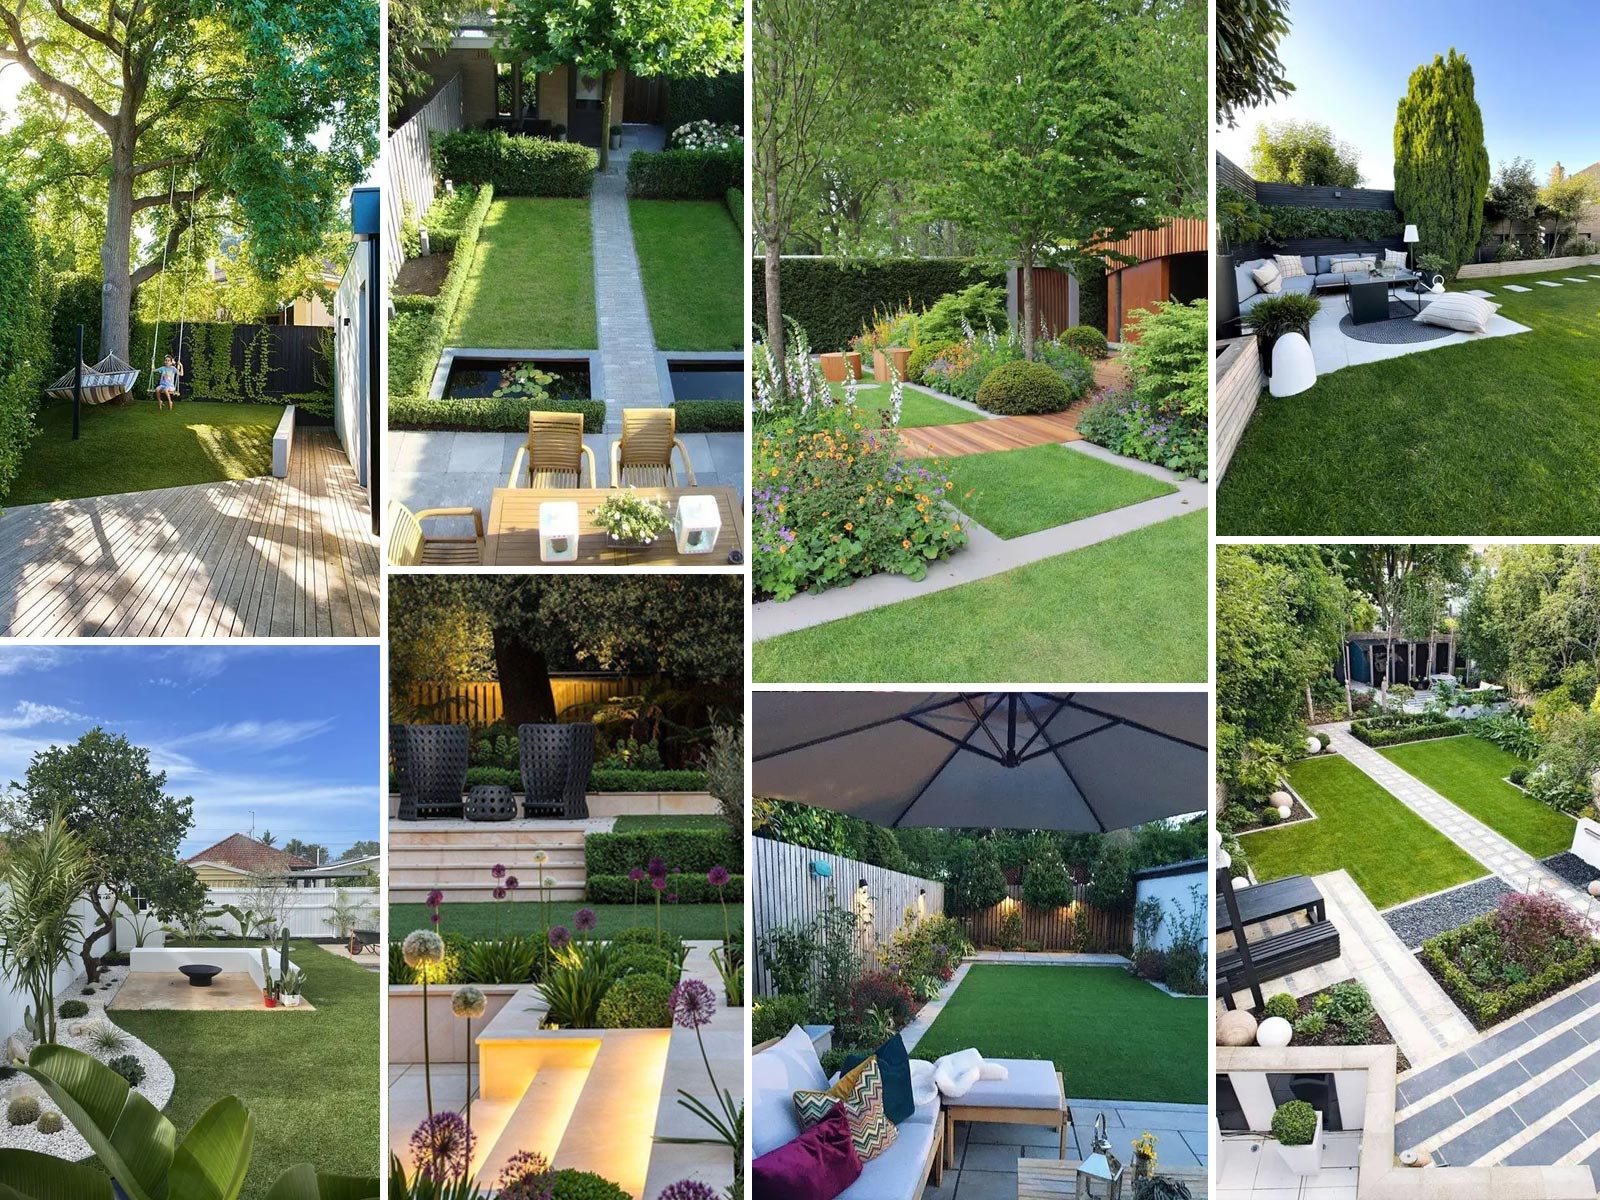 53 Ιδέες για κήπους και αυλές: Μοντέρνα Διακόσμηση και αίσθηση πολυτέλειας στο σπίτι σας